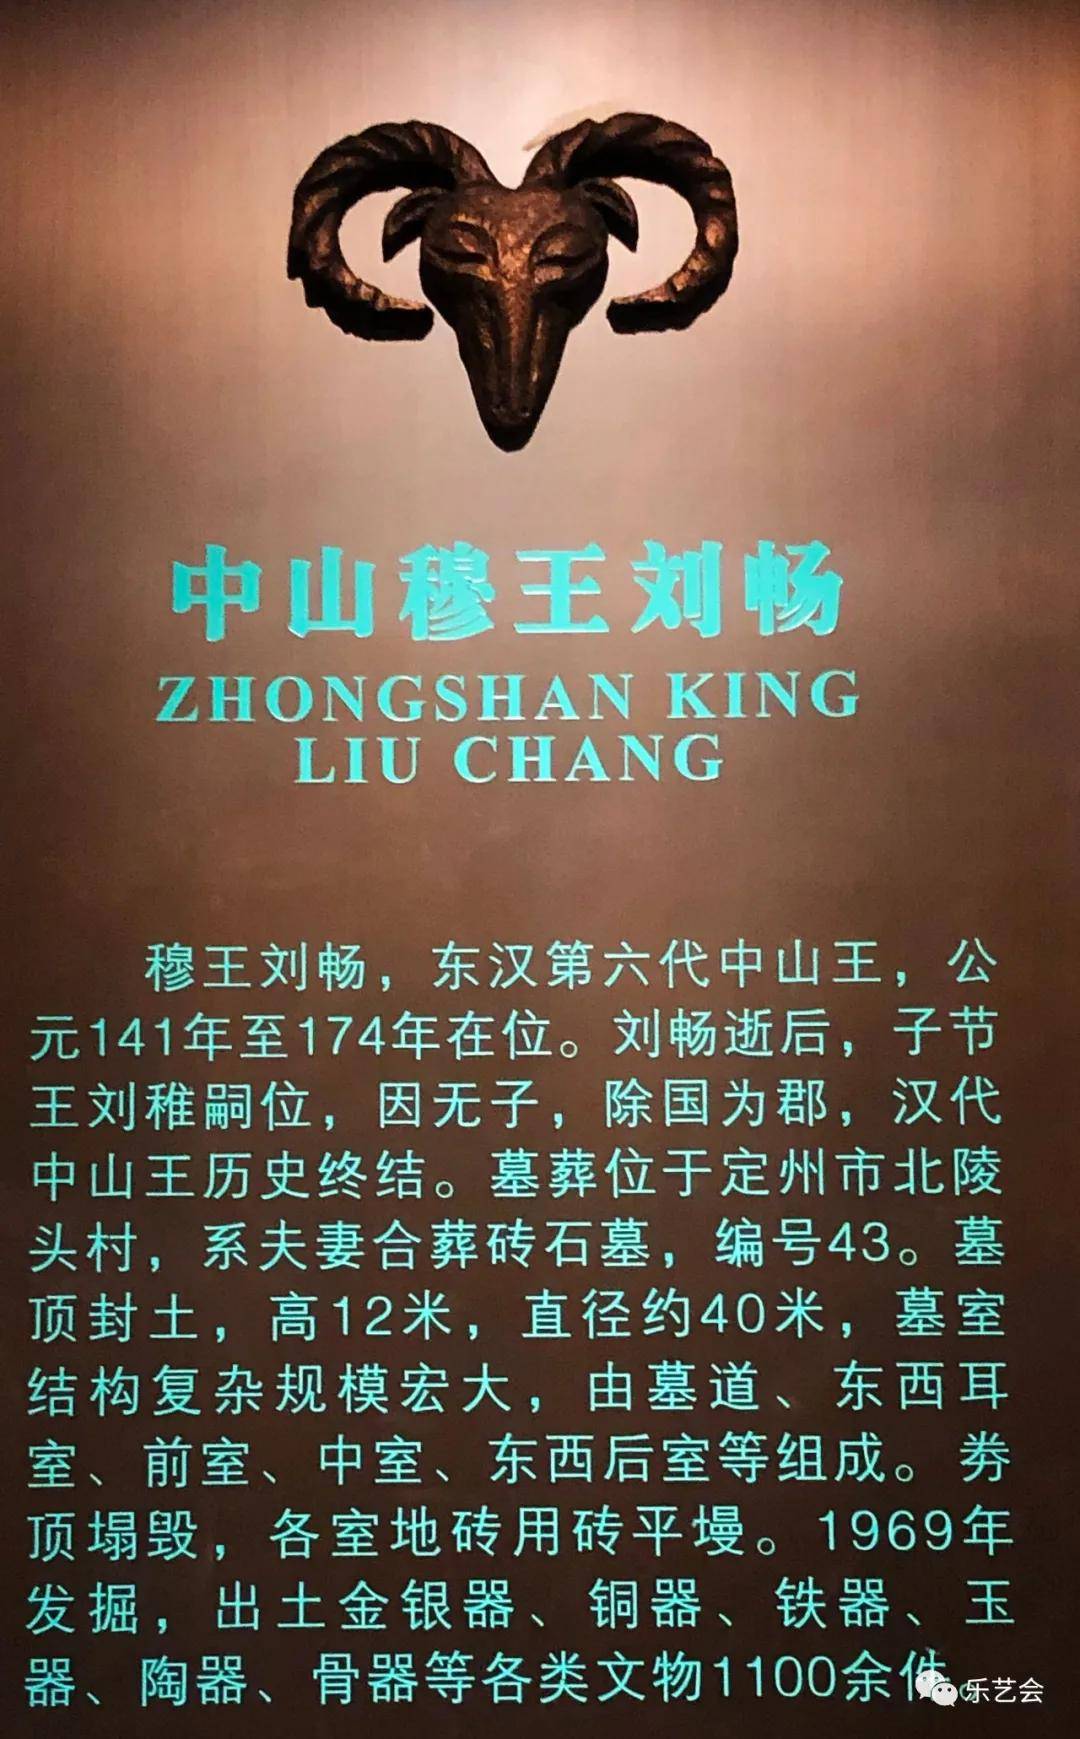 二单元中,以图片文字形式,展示了西汉第一代中山王刘胜墓,西汉第六代